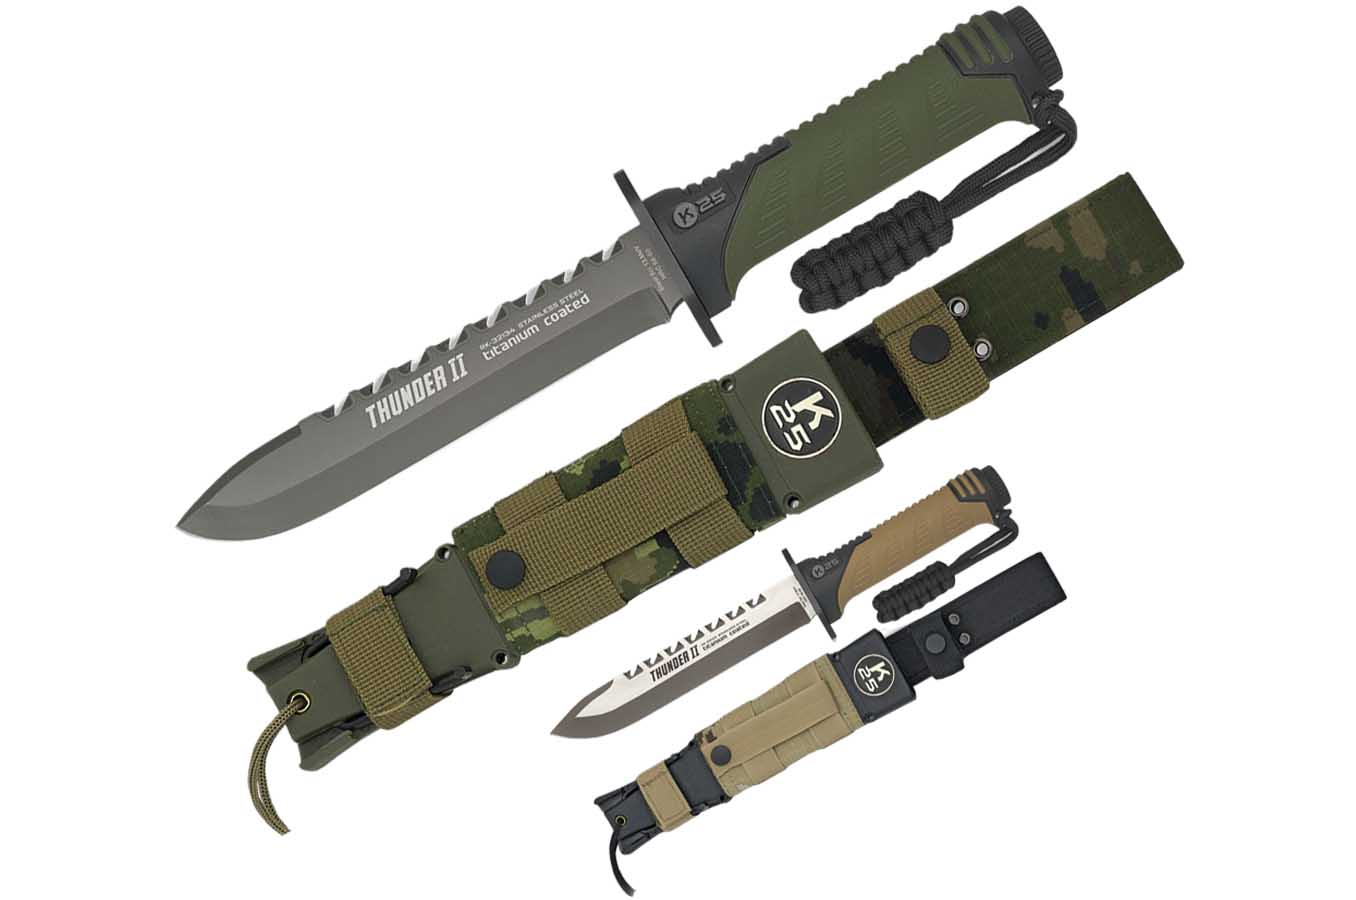 Couteau de Chasse, avec kit de survie - Thunder II, K25